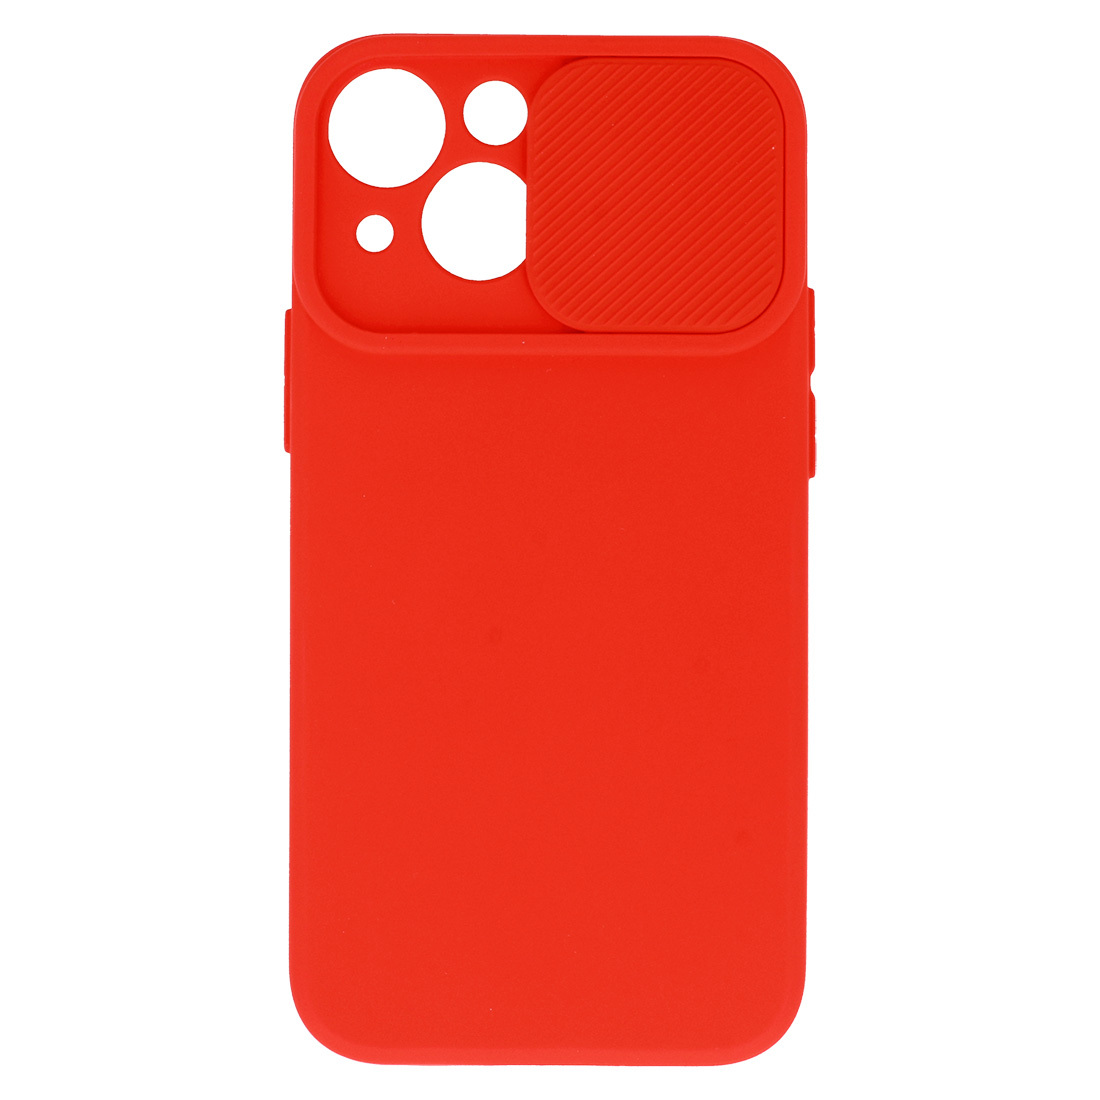 Pokrowiec etui z elastycznego TPU Camshield Soft Case czerwone APPLE iPhone 7 / 4